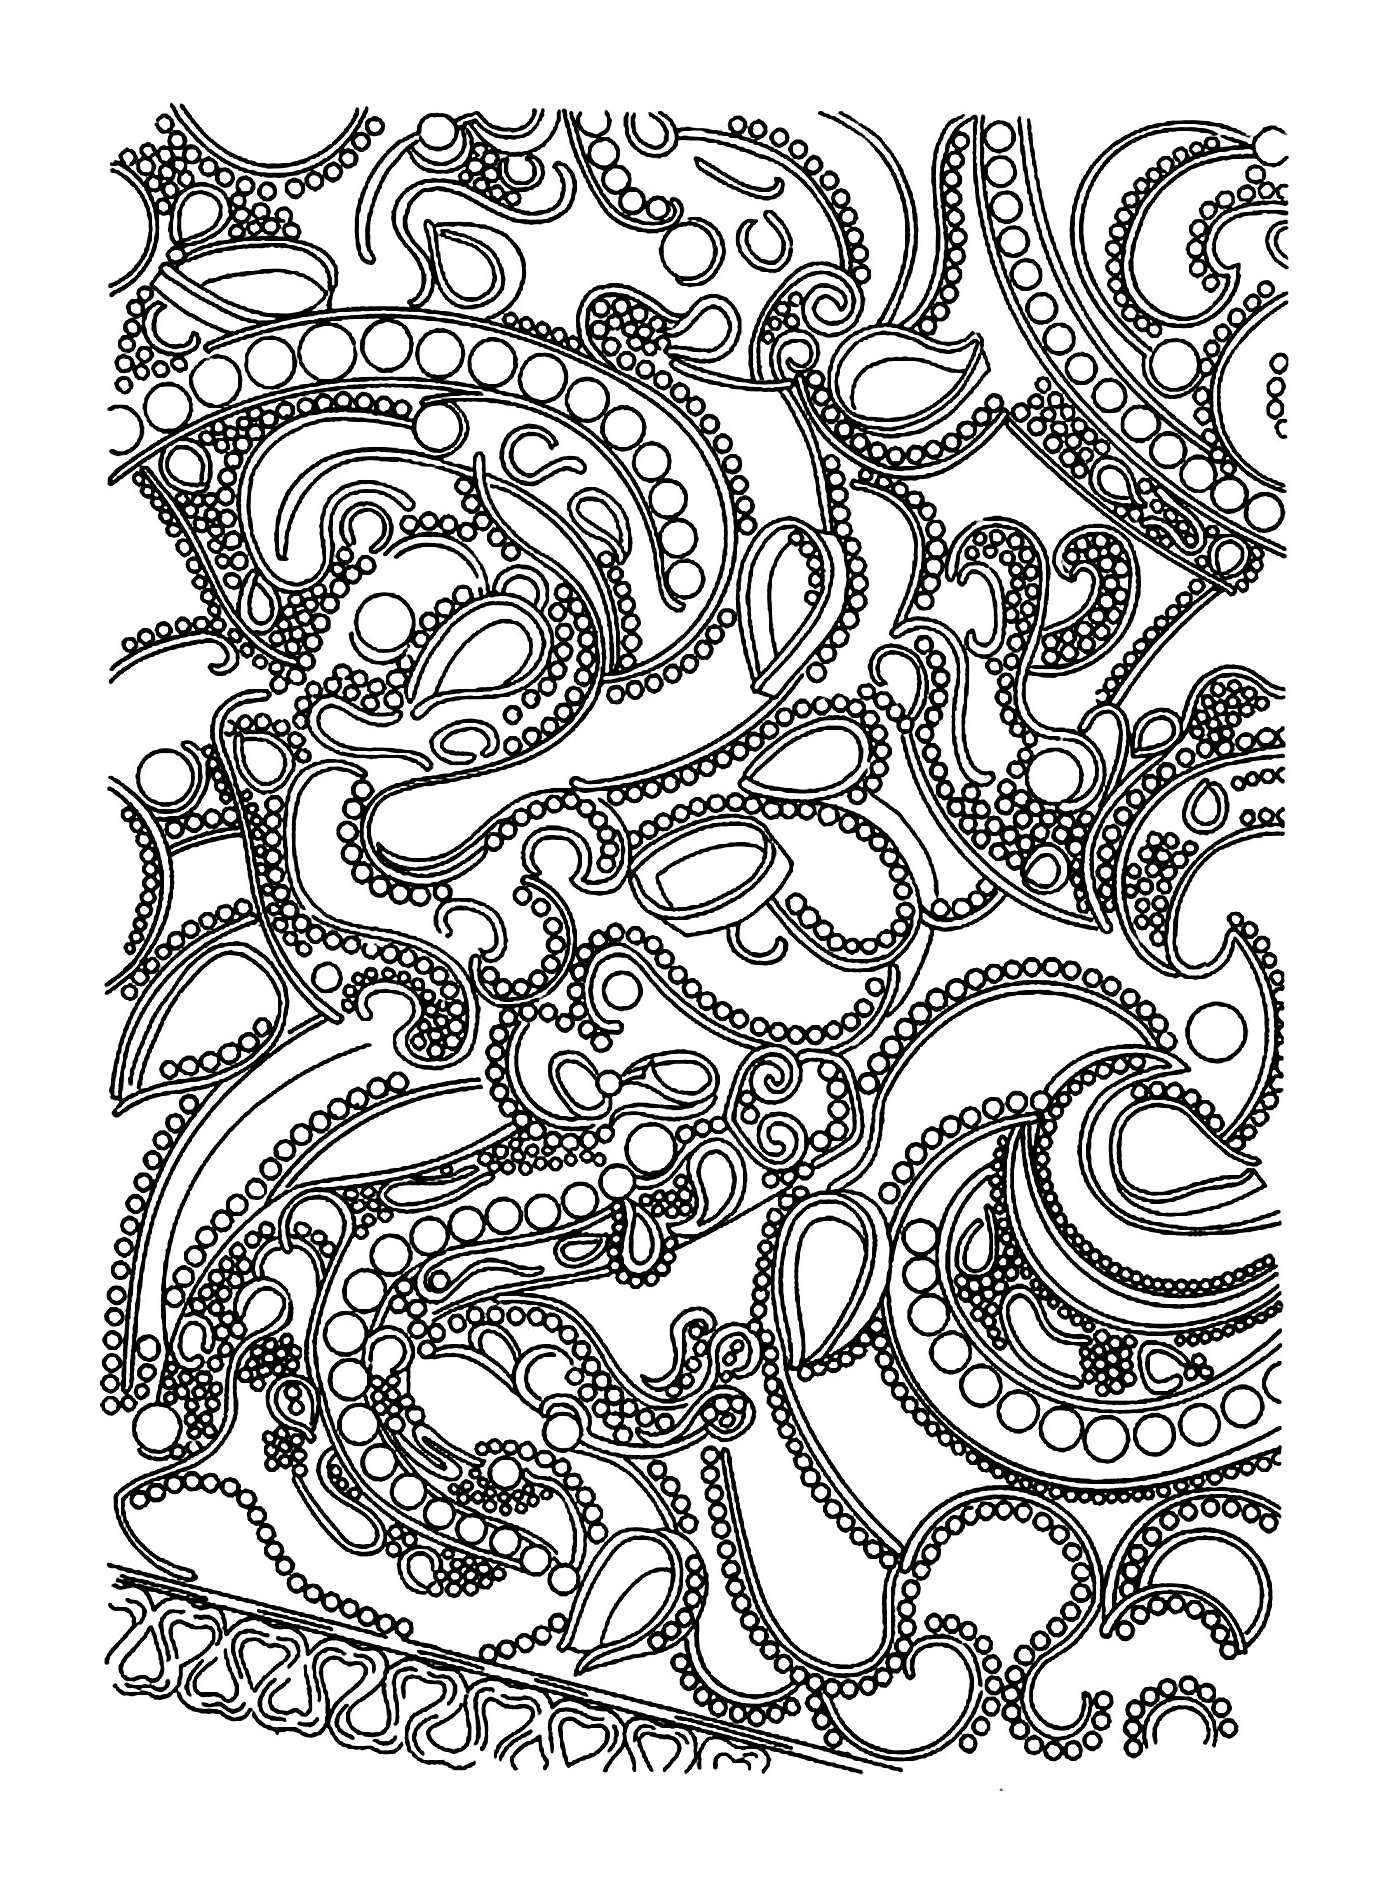  рисунок осьминога 